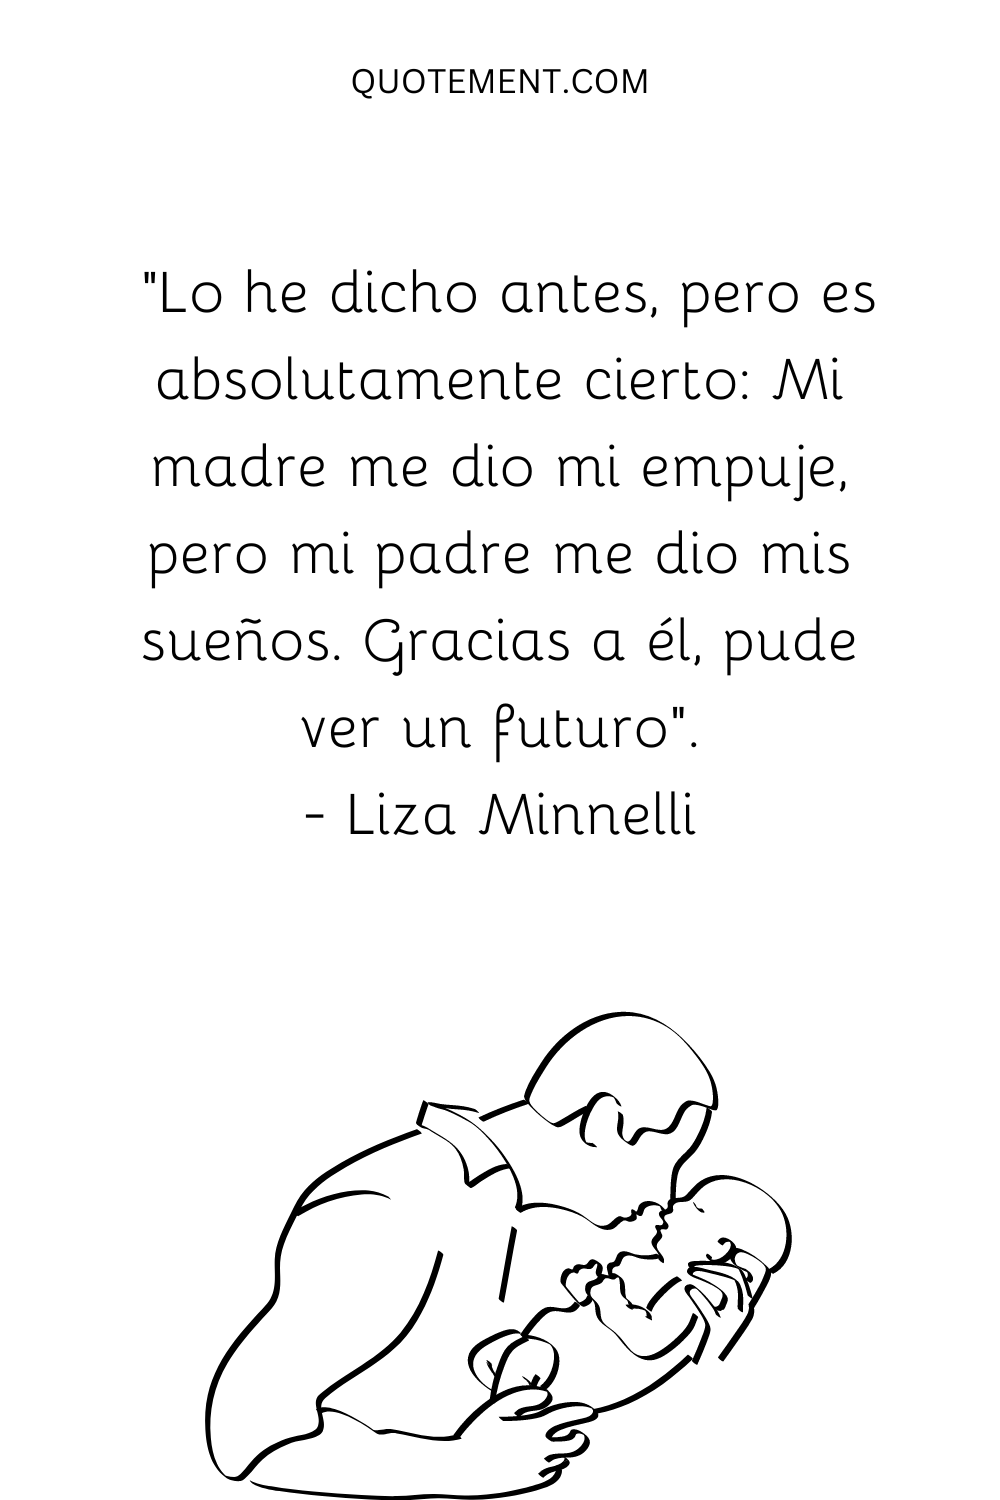 "Lo he dicho antes, pero es absolutamente cierto Mi madre me dio mi empuje, pero mi padre me dio mis sueños. Gracias a él, pude ver un futuro". - Liza Minnelli